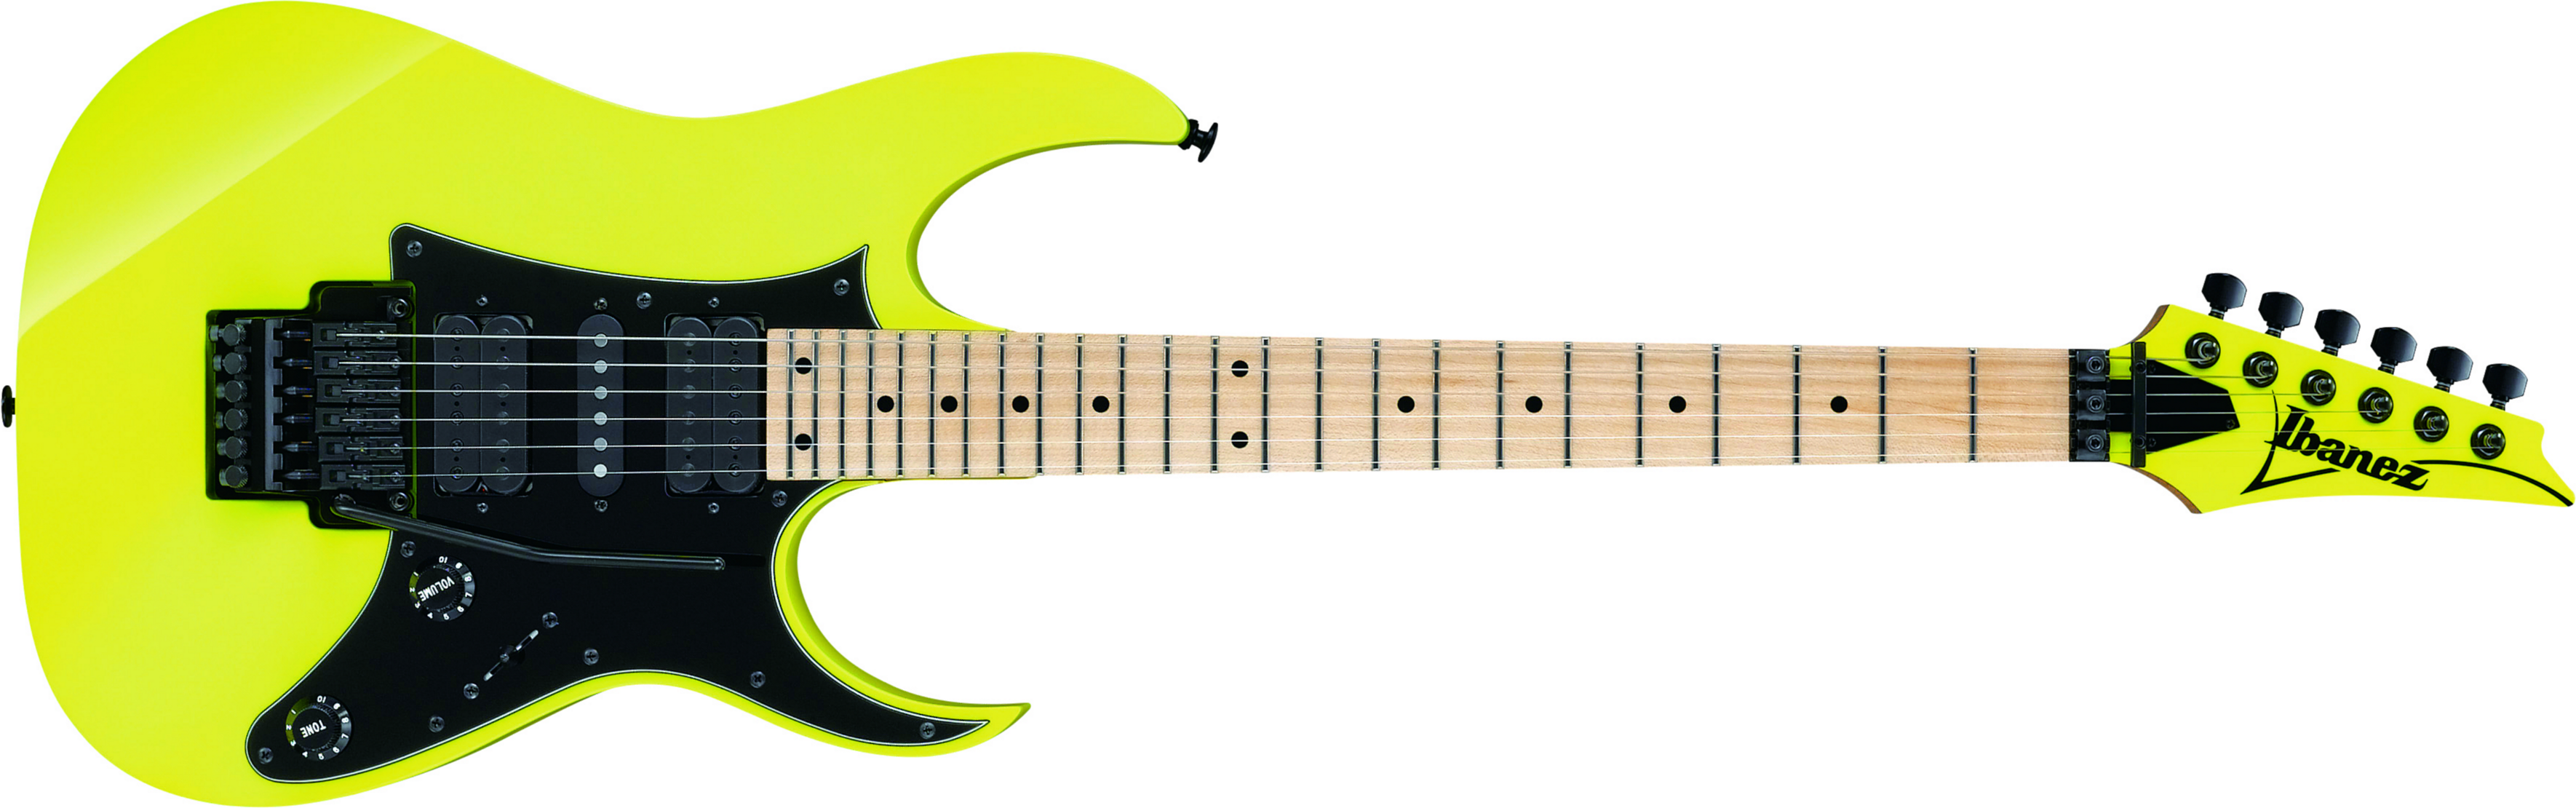 Ibanez Rg550 Dy Genesis Japon Hsh Fr Mn - Desert Sun Yellow - Guitare Électrique Forme Str - Main picture